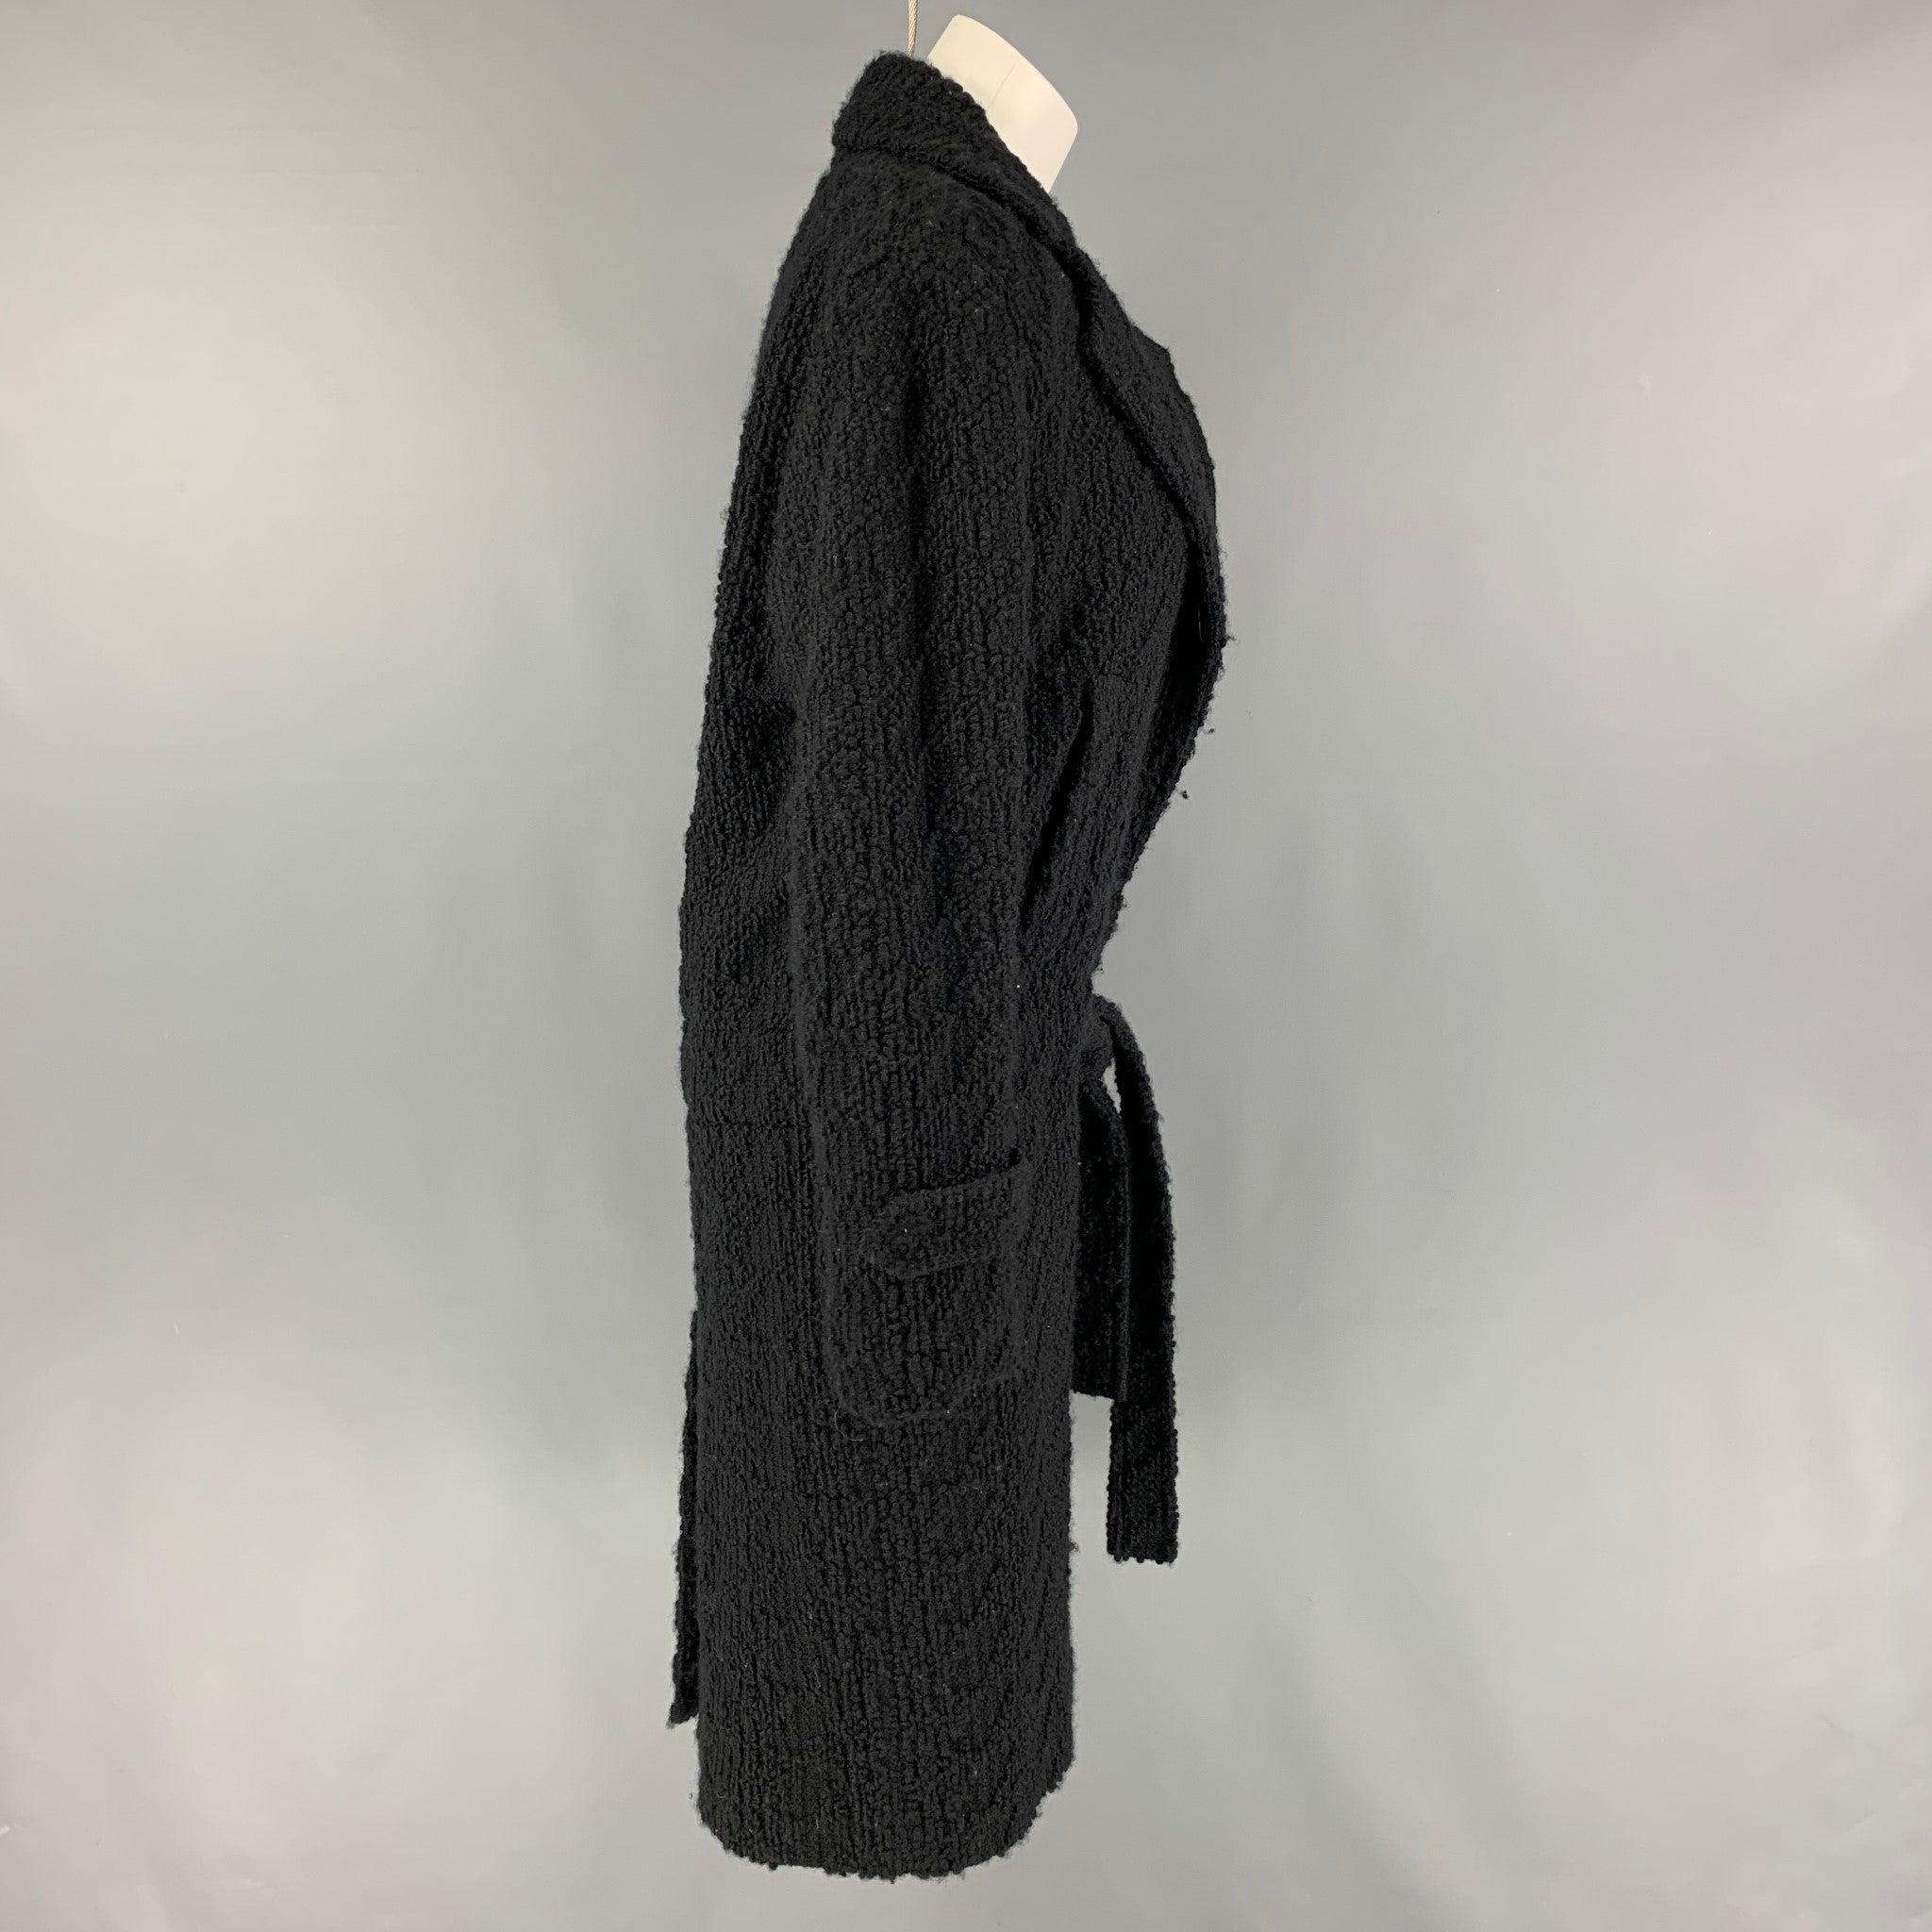 Manteau Coates NATIONAL en laine et polyamide noir avec doublure intégrale, revers échancré, ceinture, poches fendues et fermeture boutonnée. Fabriquées en Italie.
Très bien
Etat d'occasion. 

Marqué :   38 

Mesures : 
 
Épaule :
16 pouces 